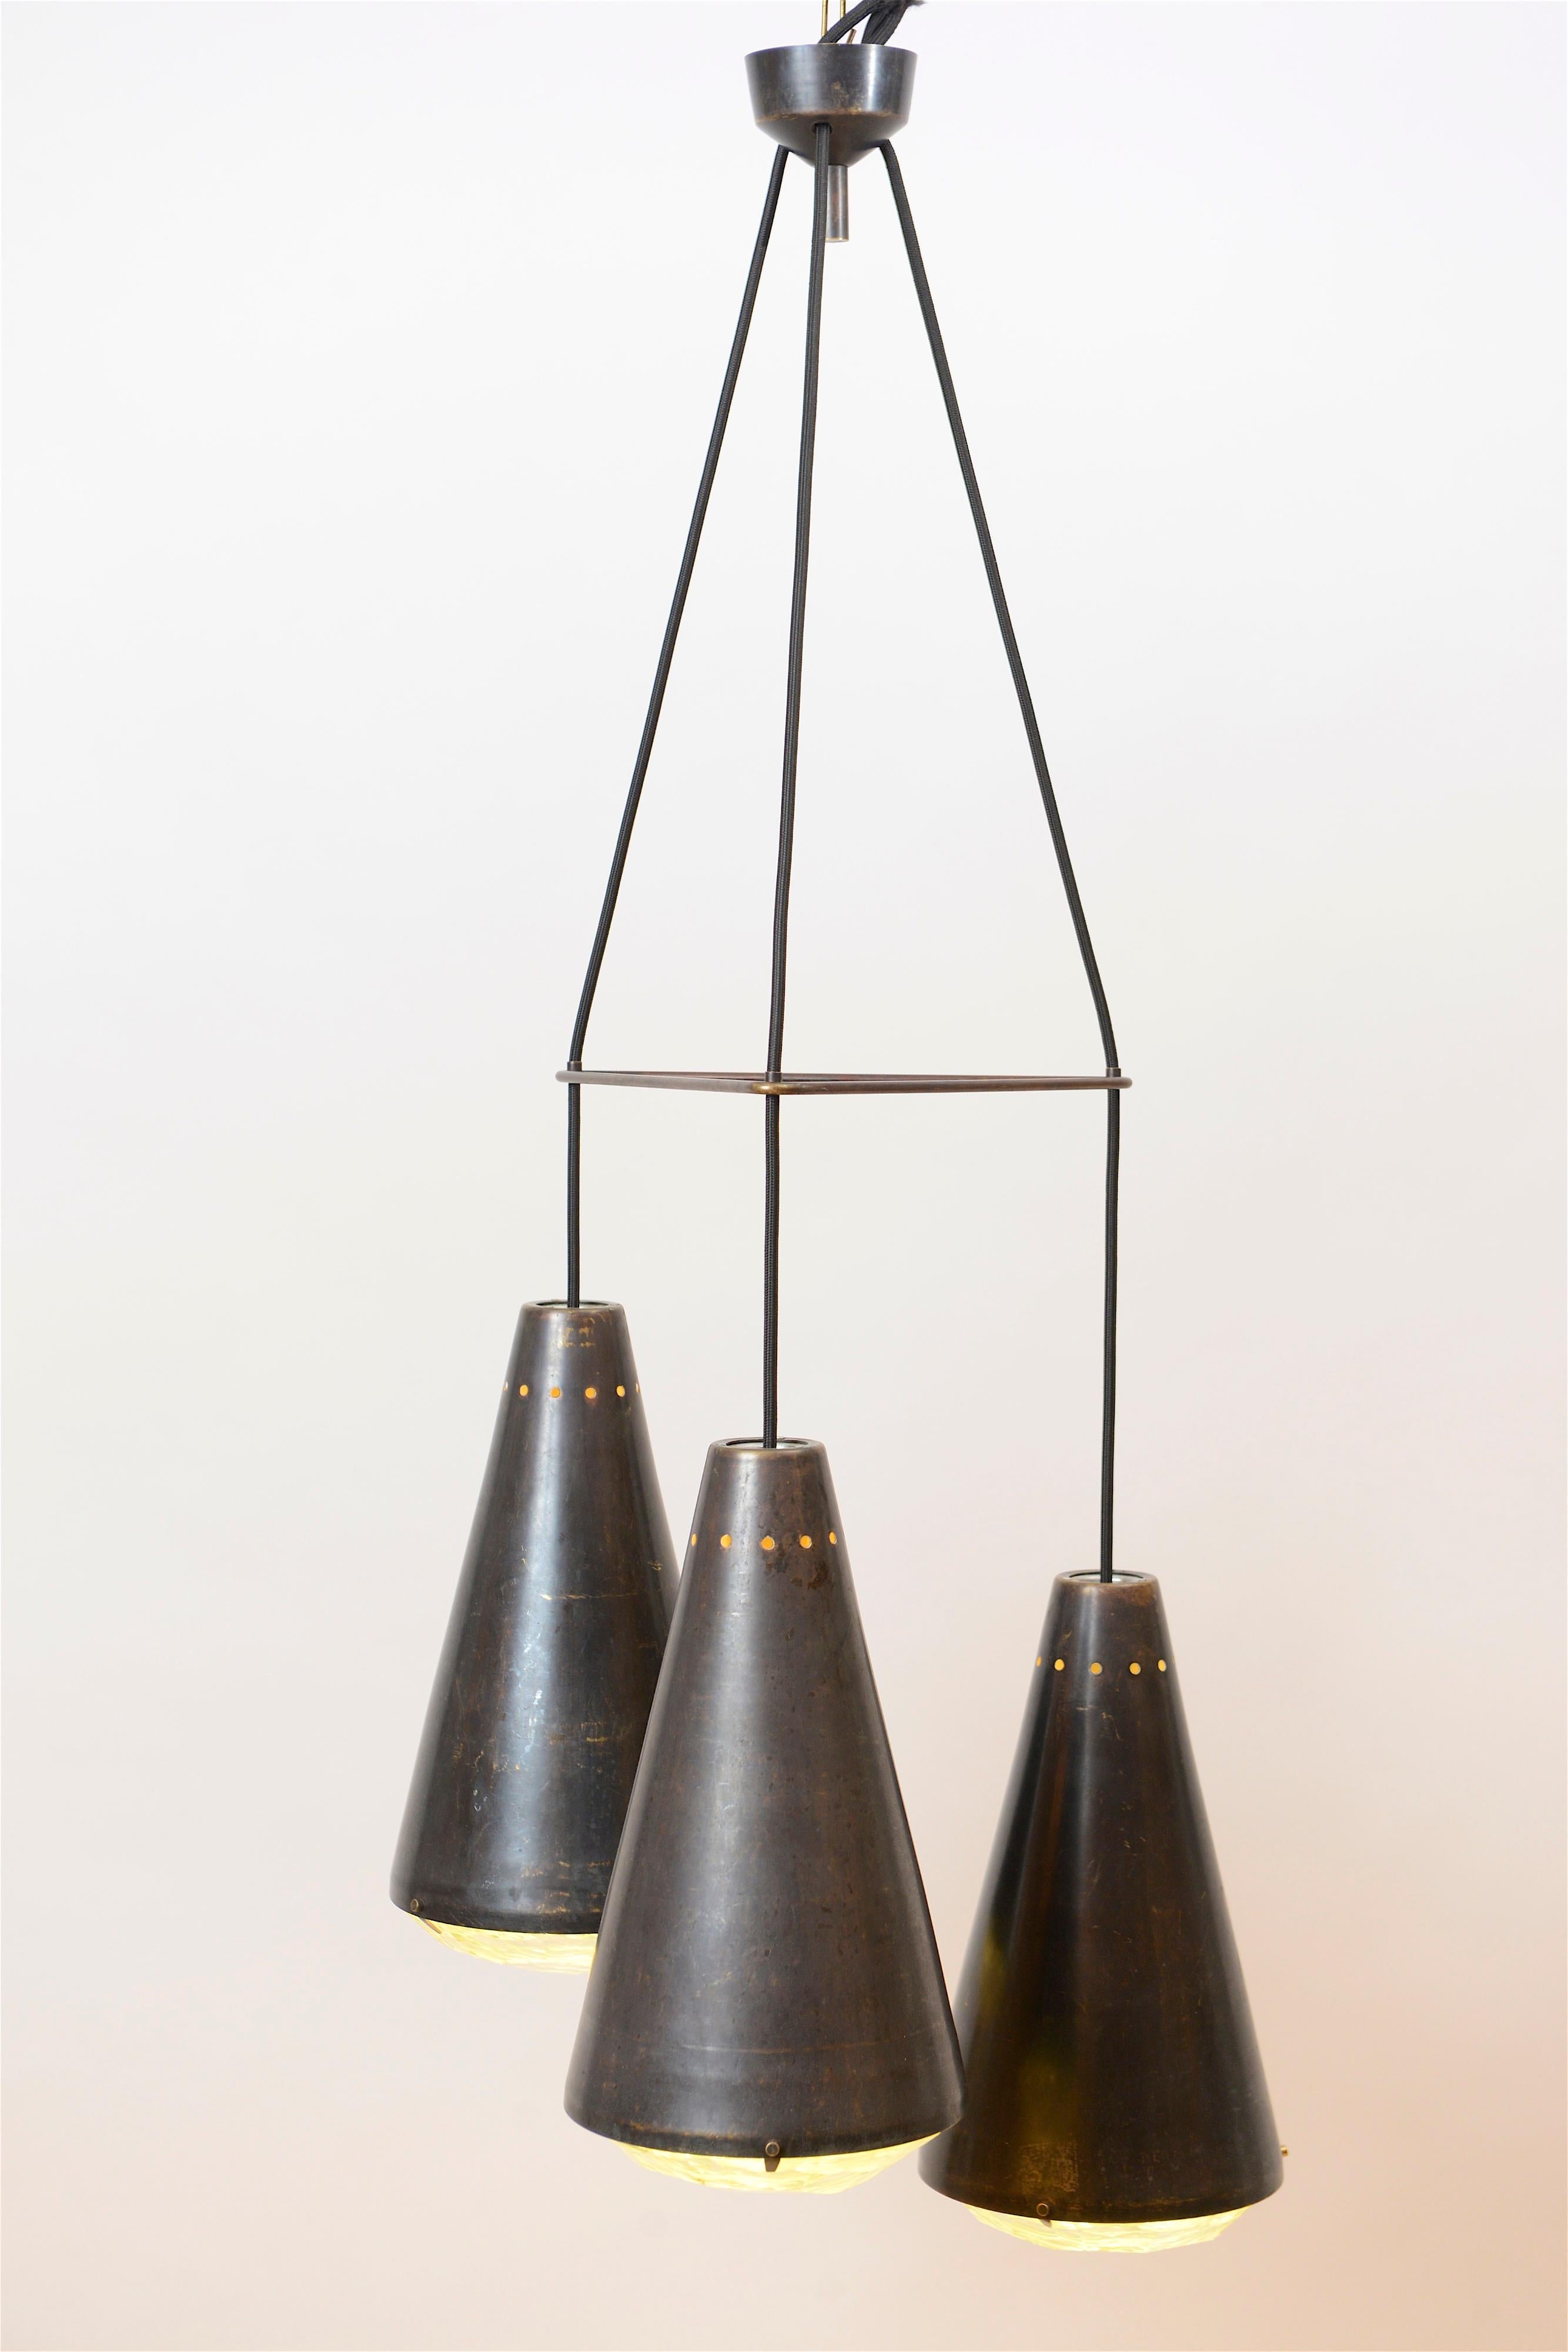 Max Ingrand ‘2126’ Model 3-Light Ceiling Pendant for Fontana Arte, Italy 1